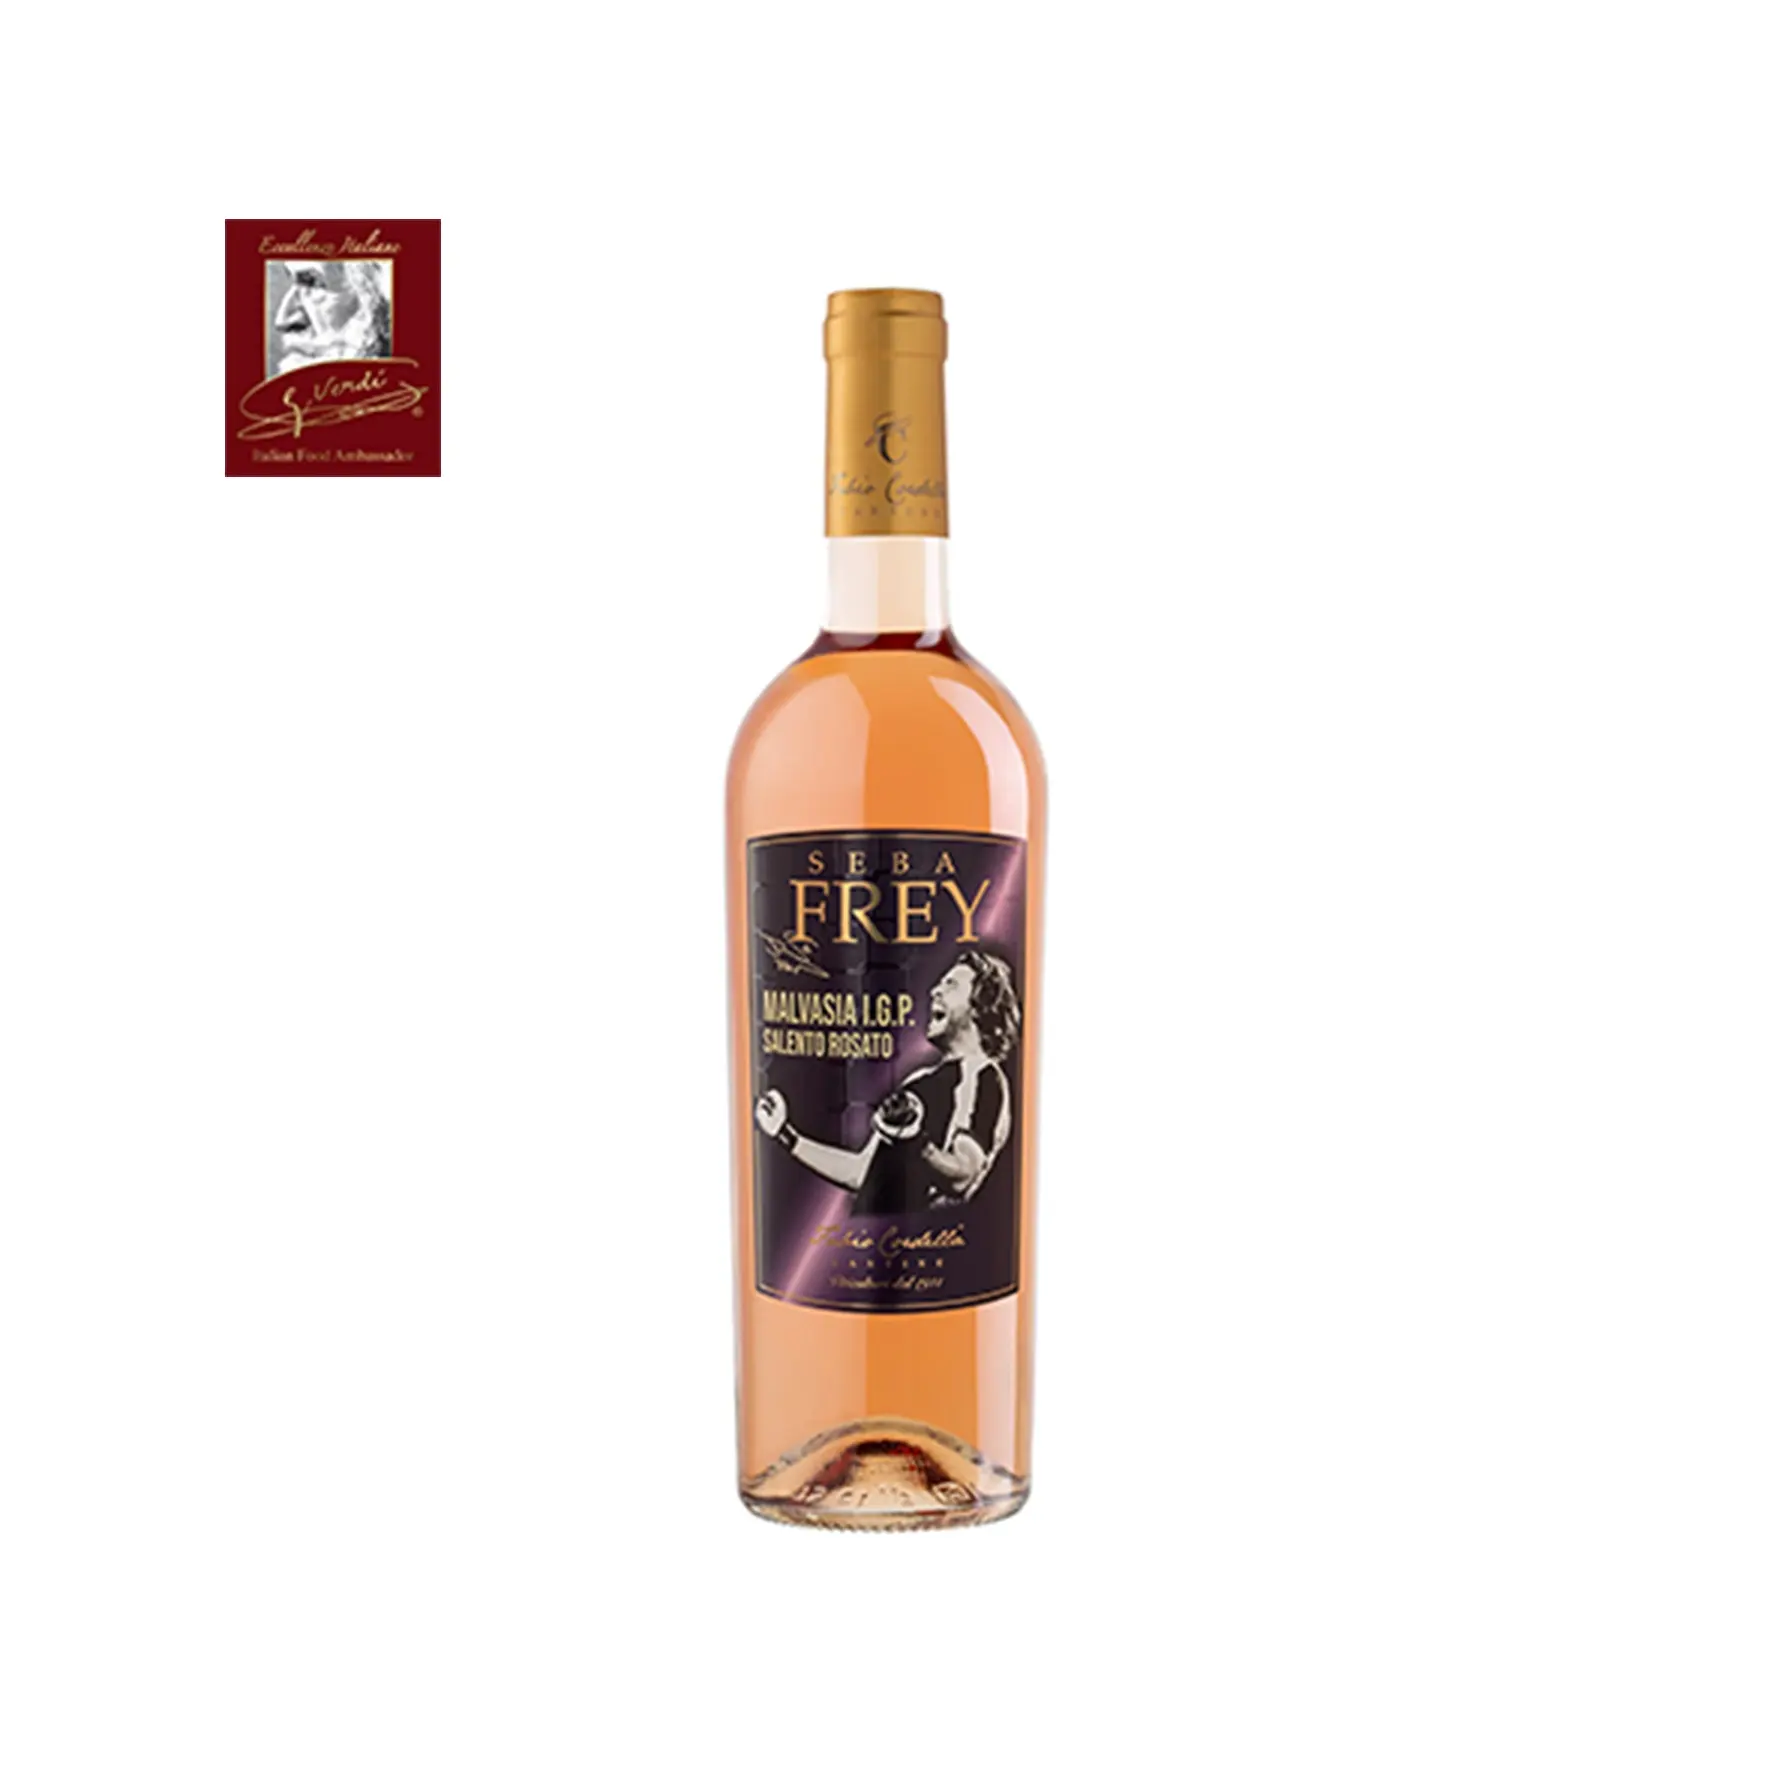 Seba Frey Italienischer Wein Malva sia Rose IGP 0,750 Liter Flaschen Der Wein von Champion GVERDI Selection Made Italy Roséwein